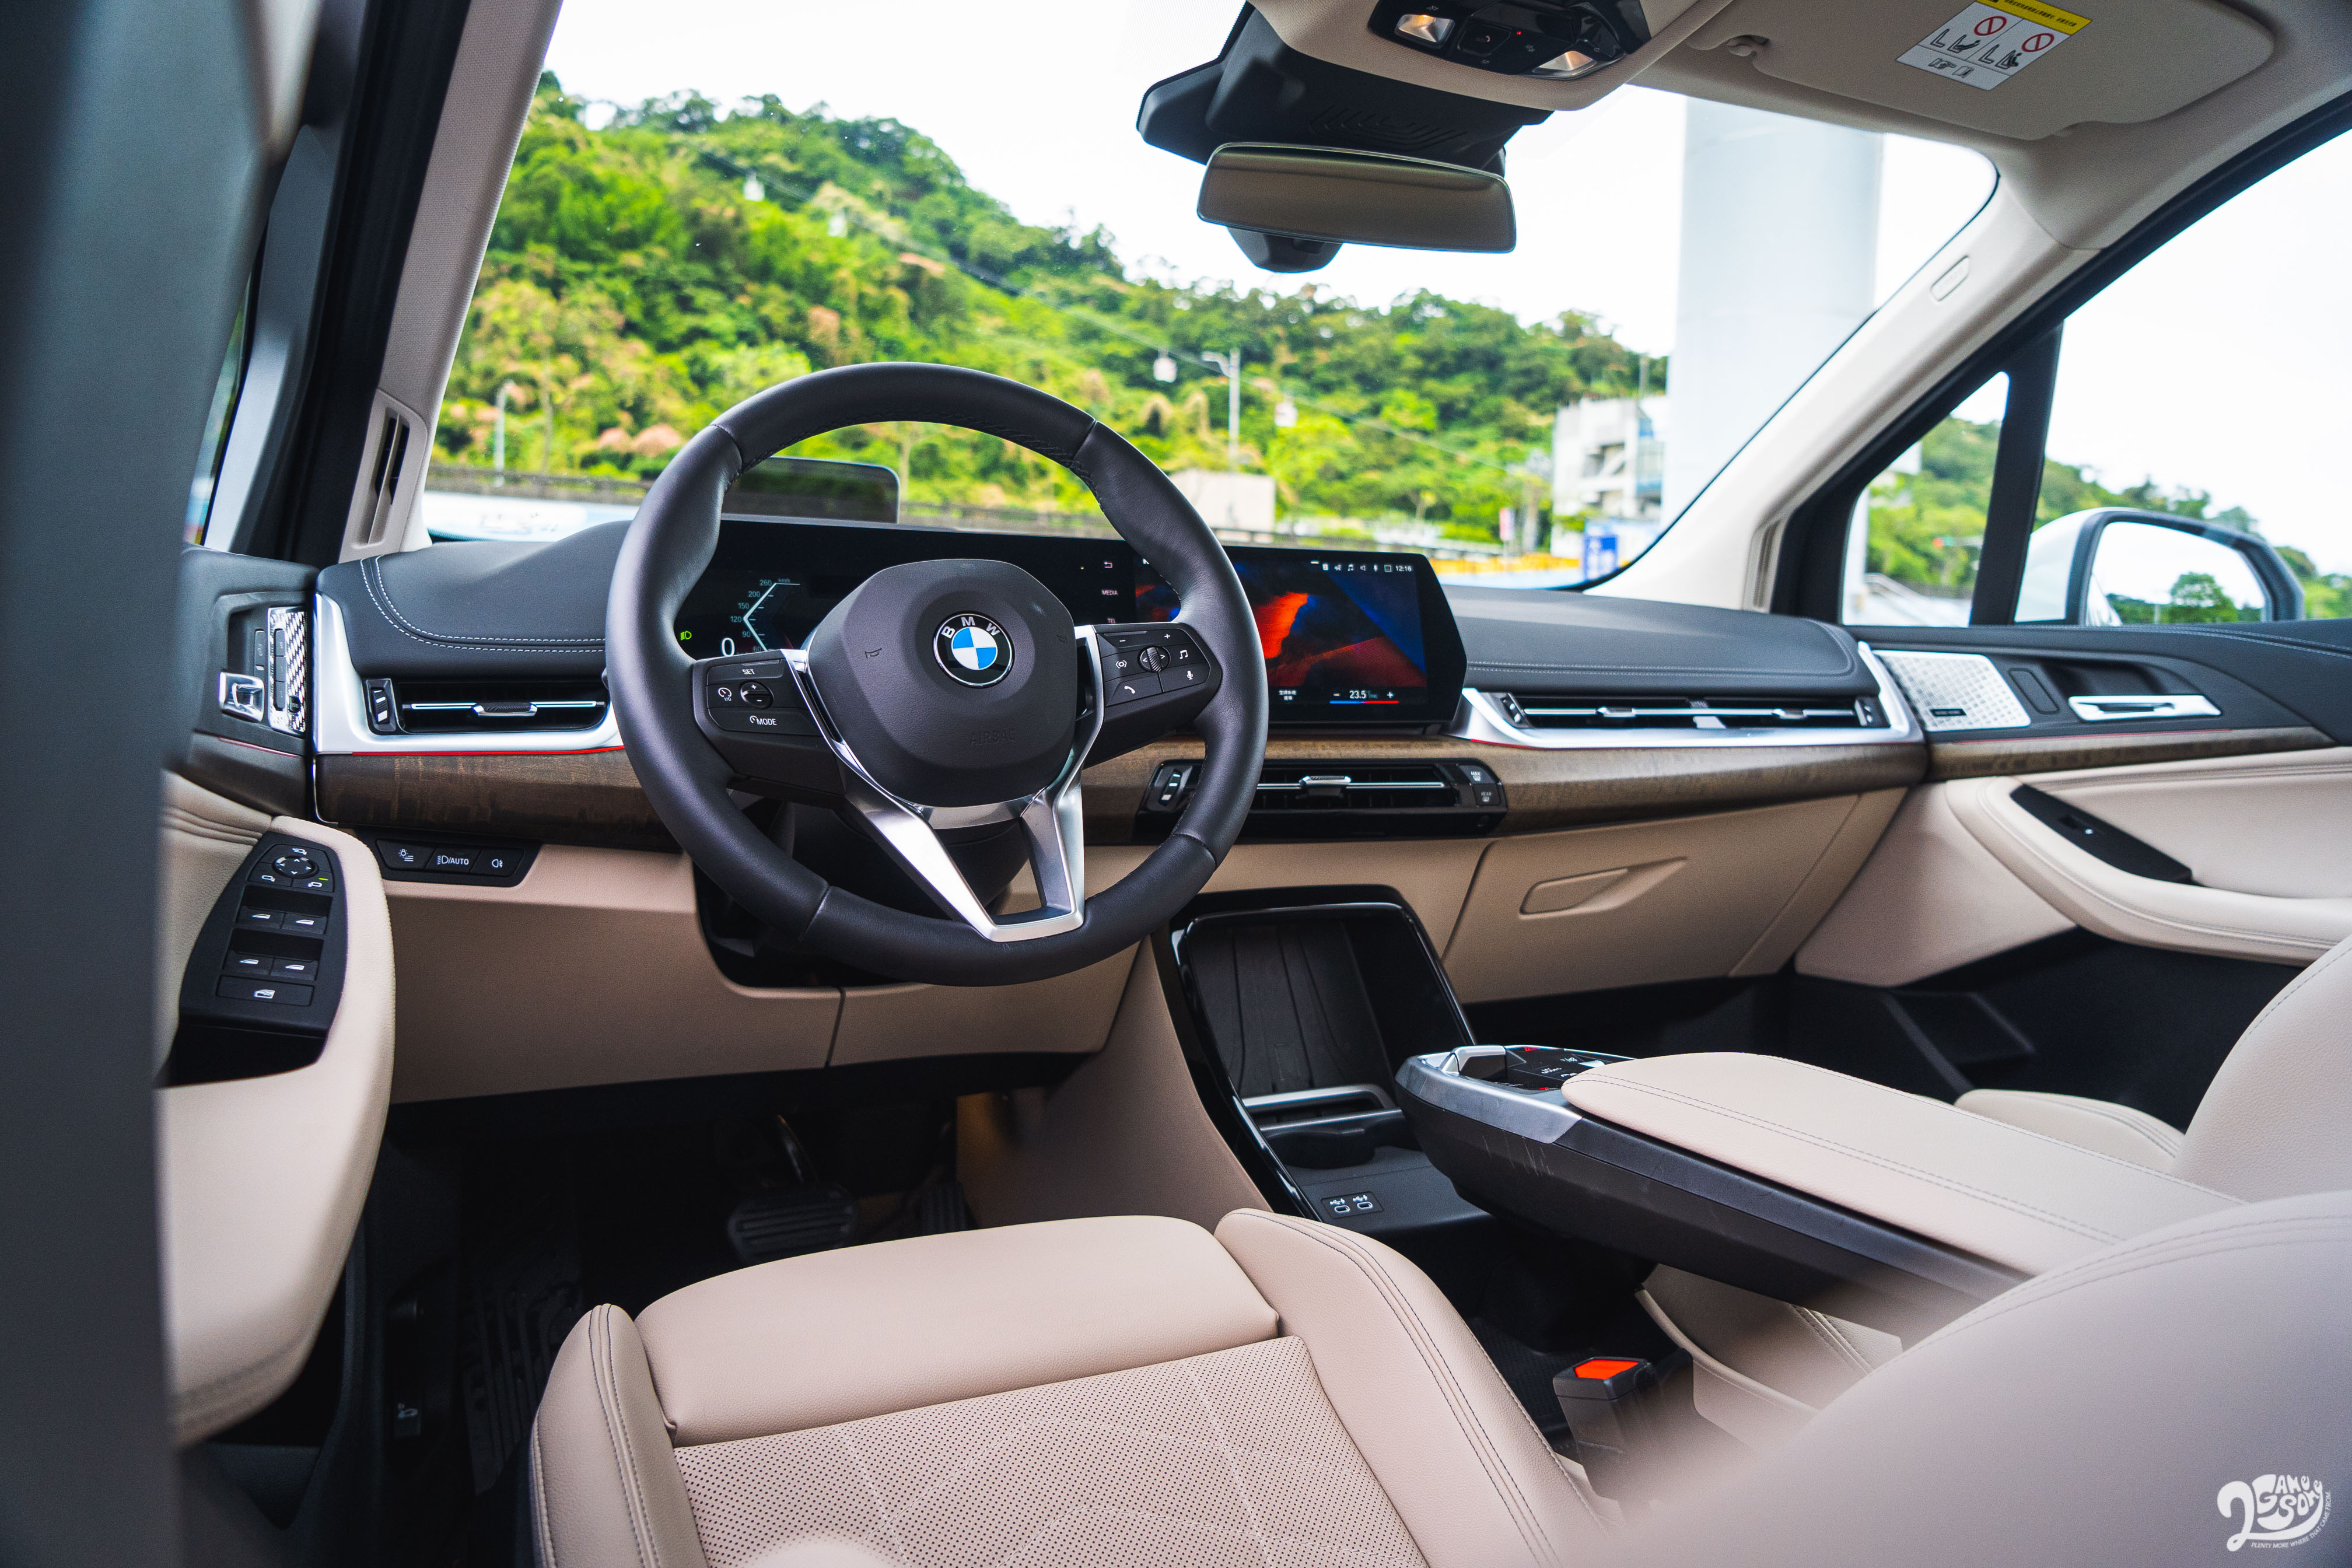 雙曲面螢幕組成的虛擬座艙介面為車室內最吸引人處。